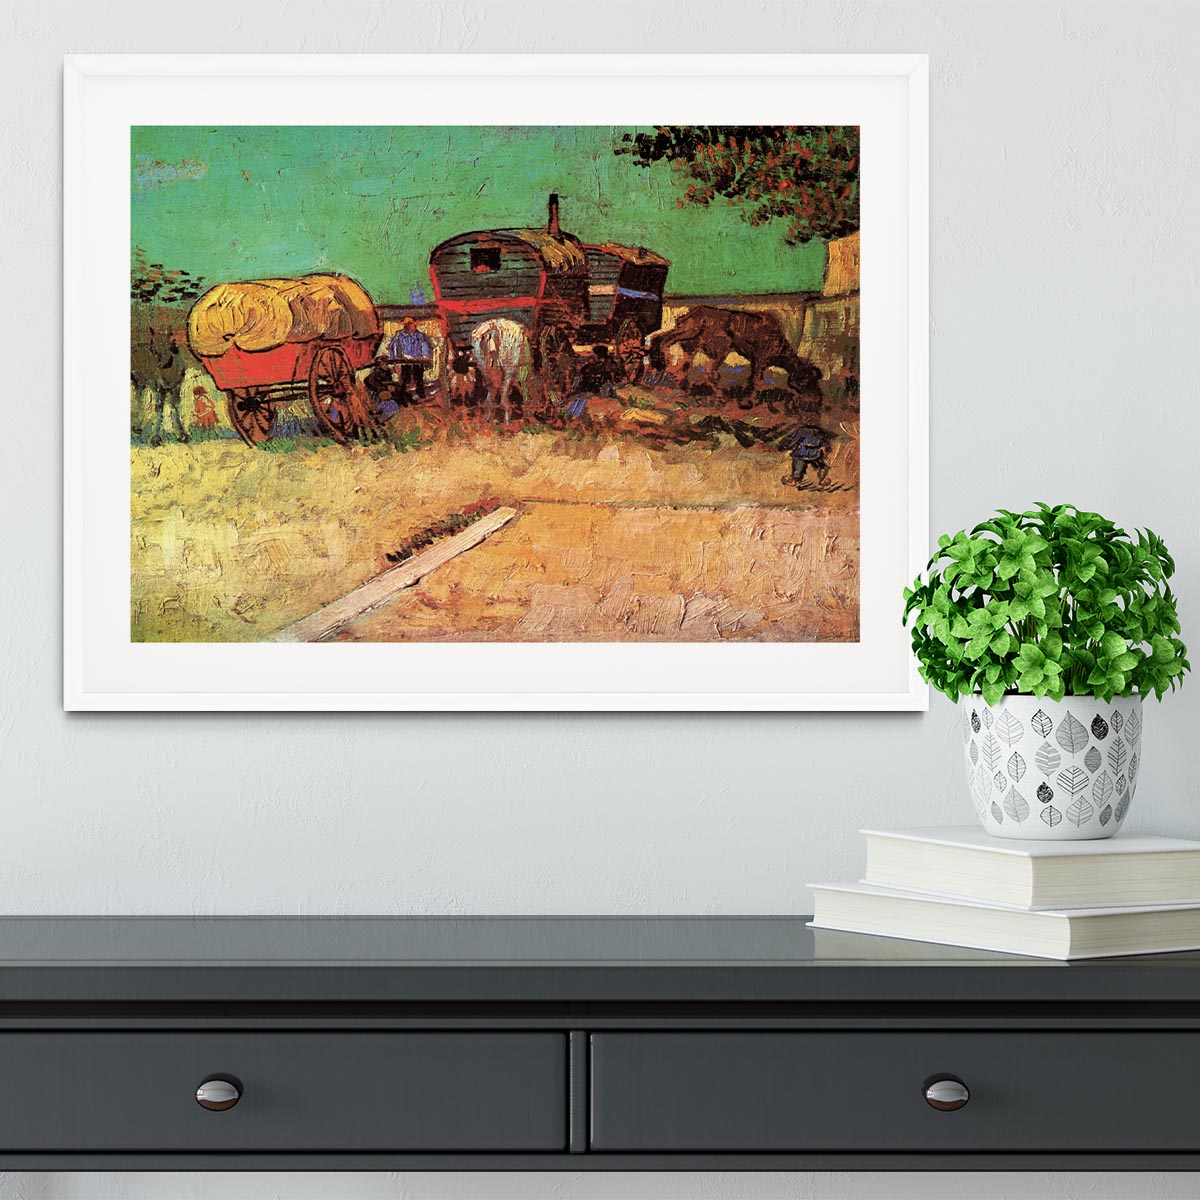 Encampment of Gypsies with Caravans by Van Gogh Framed Print - Canvas Art Rocks - 5